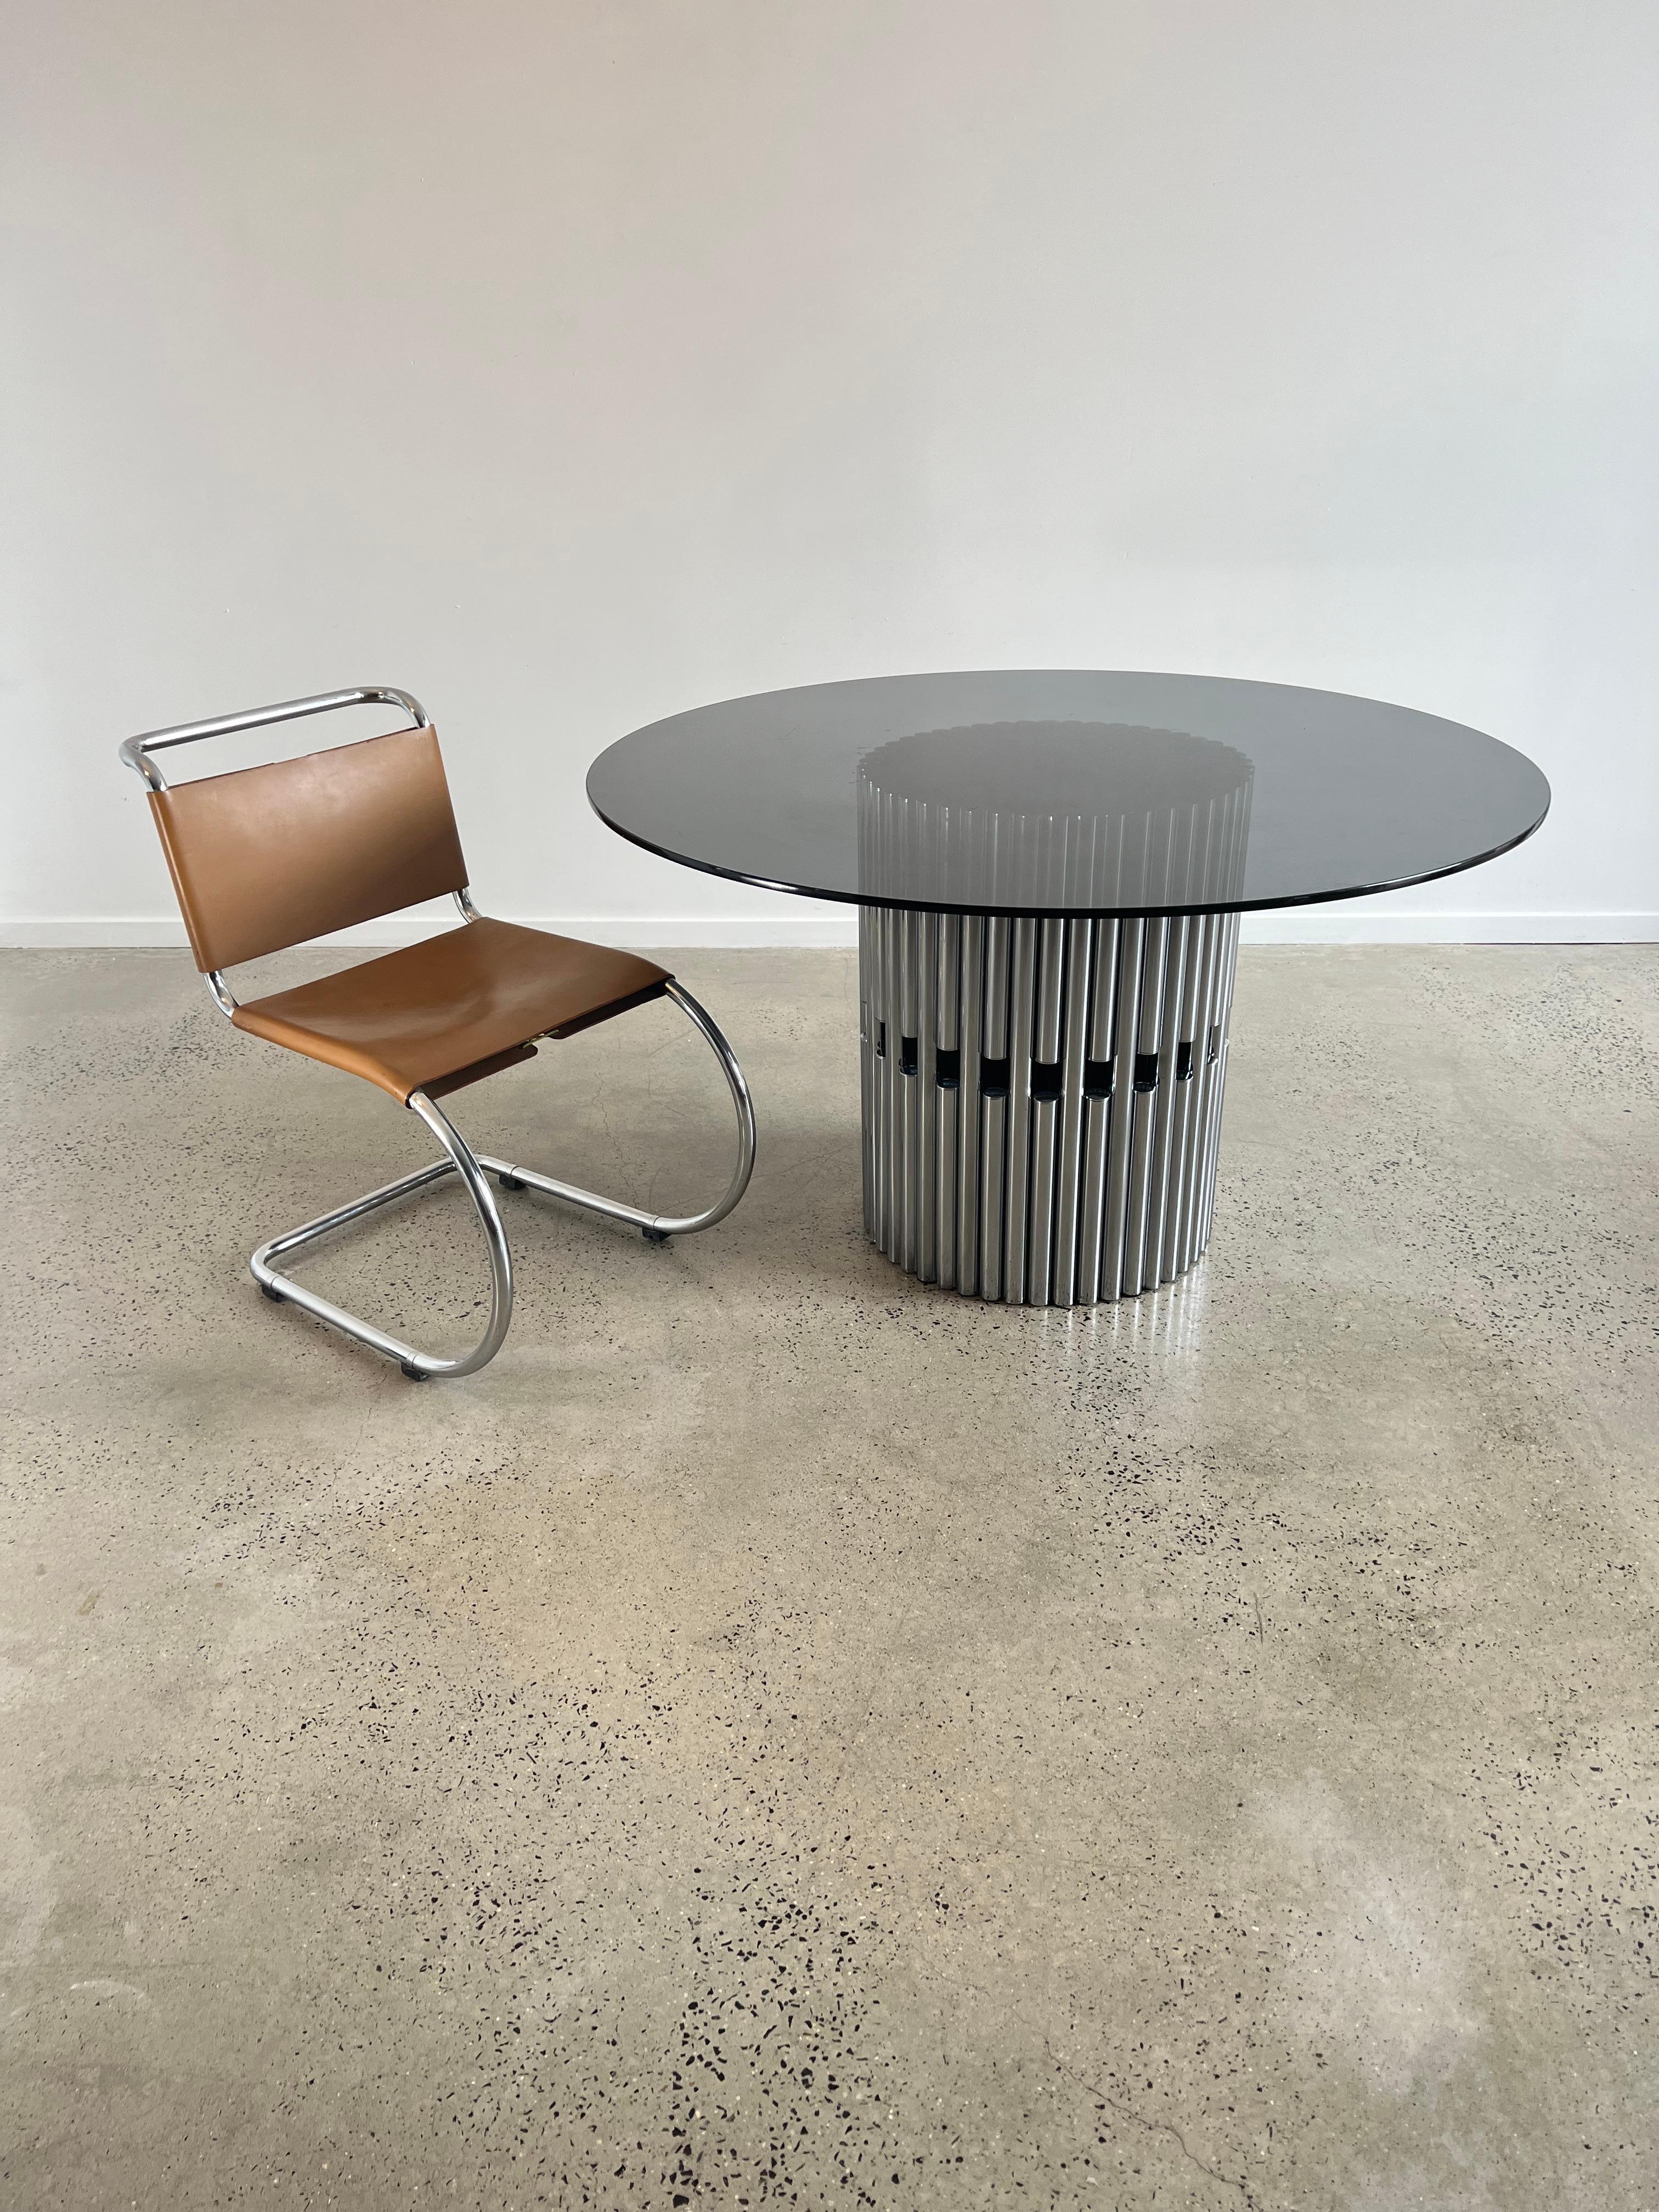 Ces chaises de salle à manger MR10 emblématiques, conçues par Ludwig Mies Van der Rohe et fabriquées par Knoll International, sont appréciées pour leur design épuré, la haute qualité du travail du métal et la qualité des matériaux.
 le confort